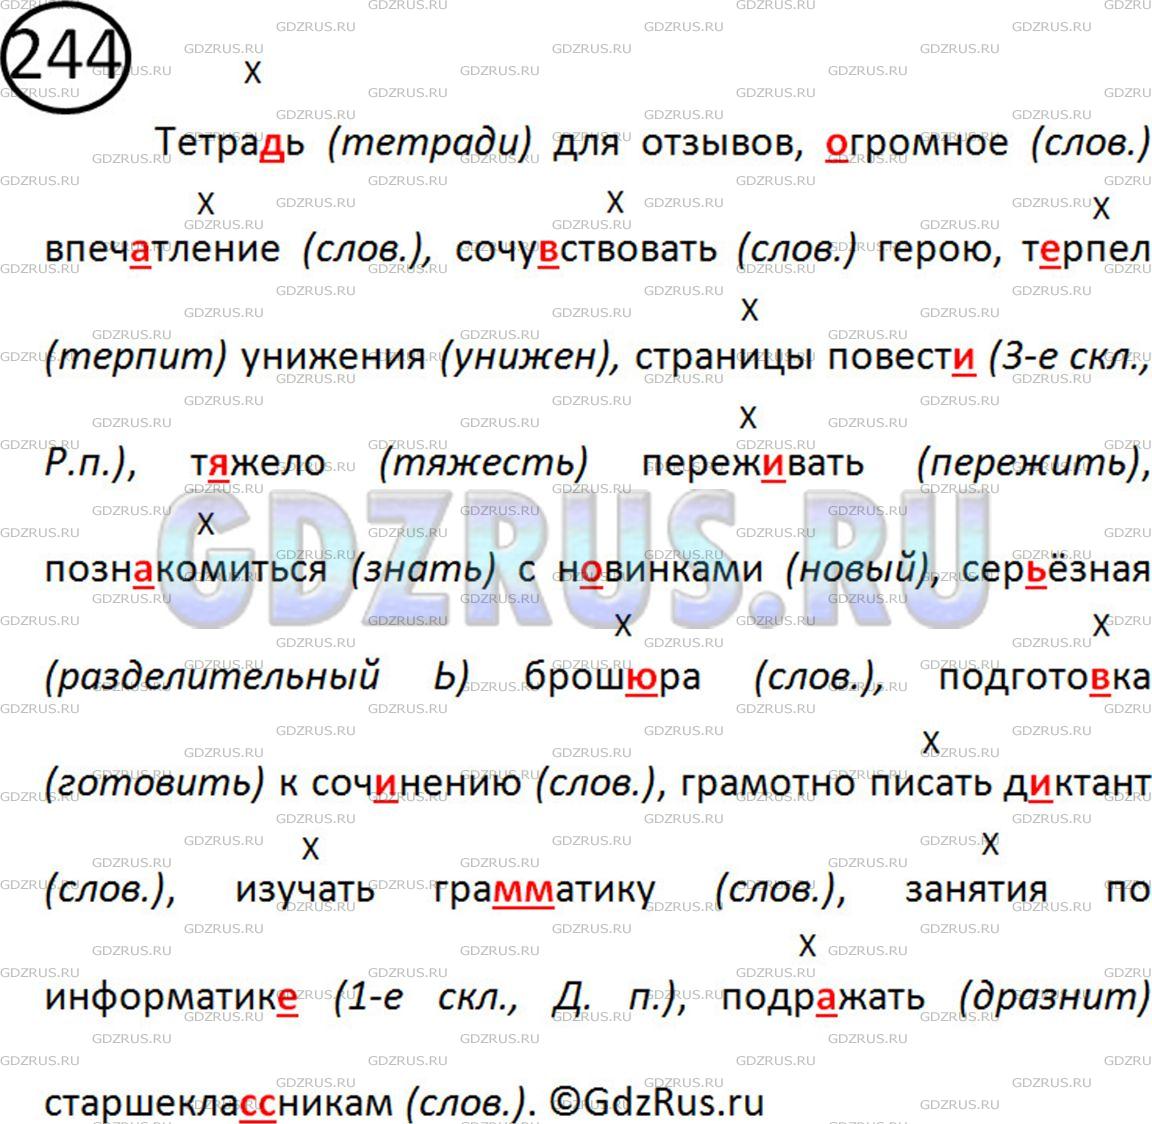 Фото решения 2: Номер №244 из ГДЗ по Русскому языку 5 класс: Ладыженская Т.А. 2012г.